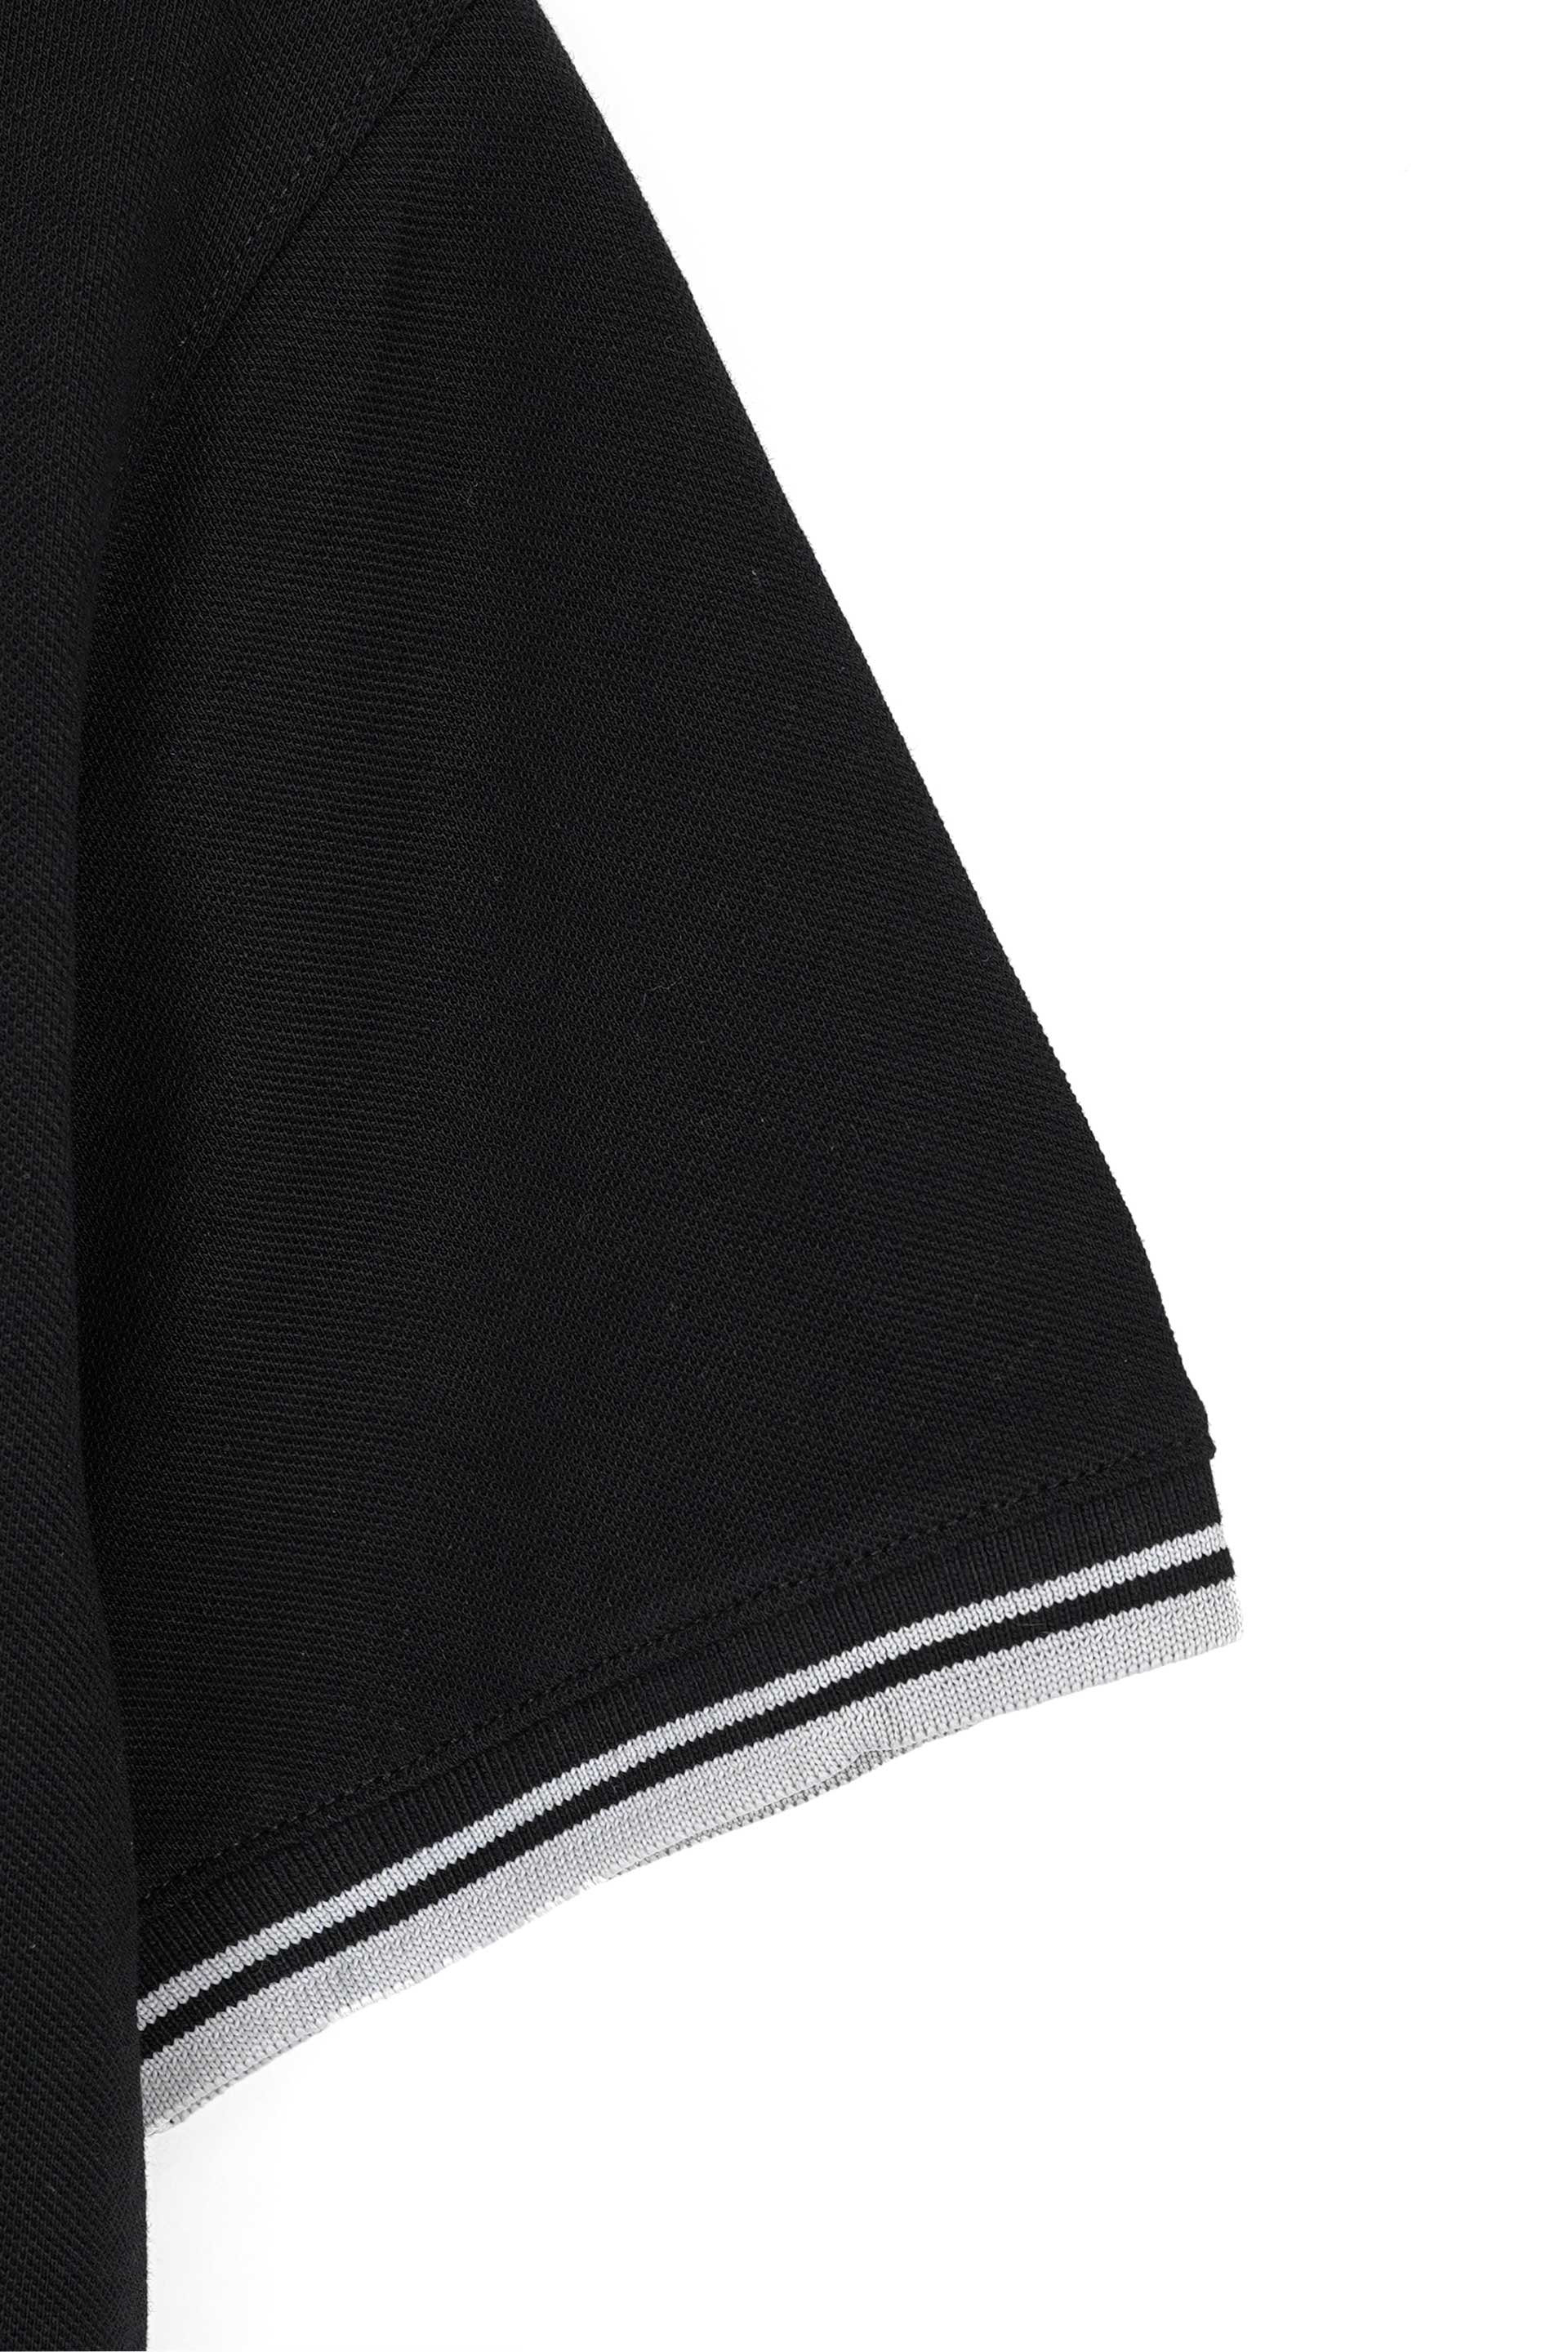 Embroidered Pique Black Polo Shirt 002479